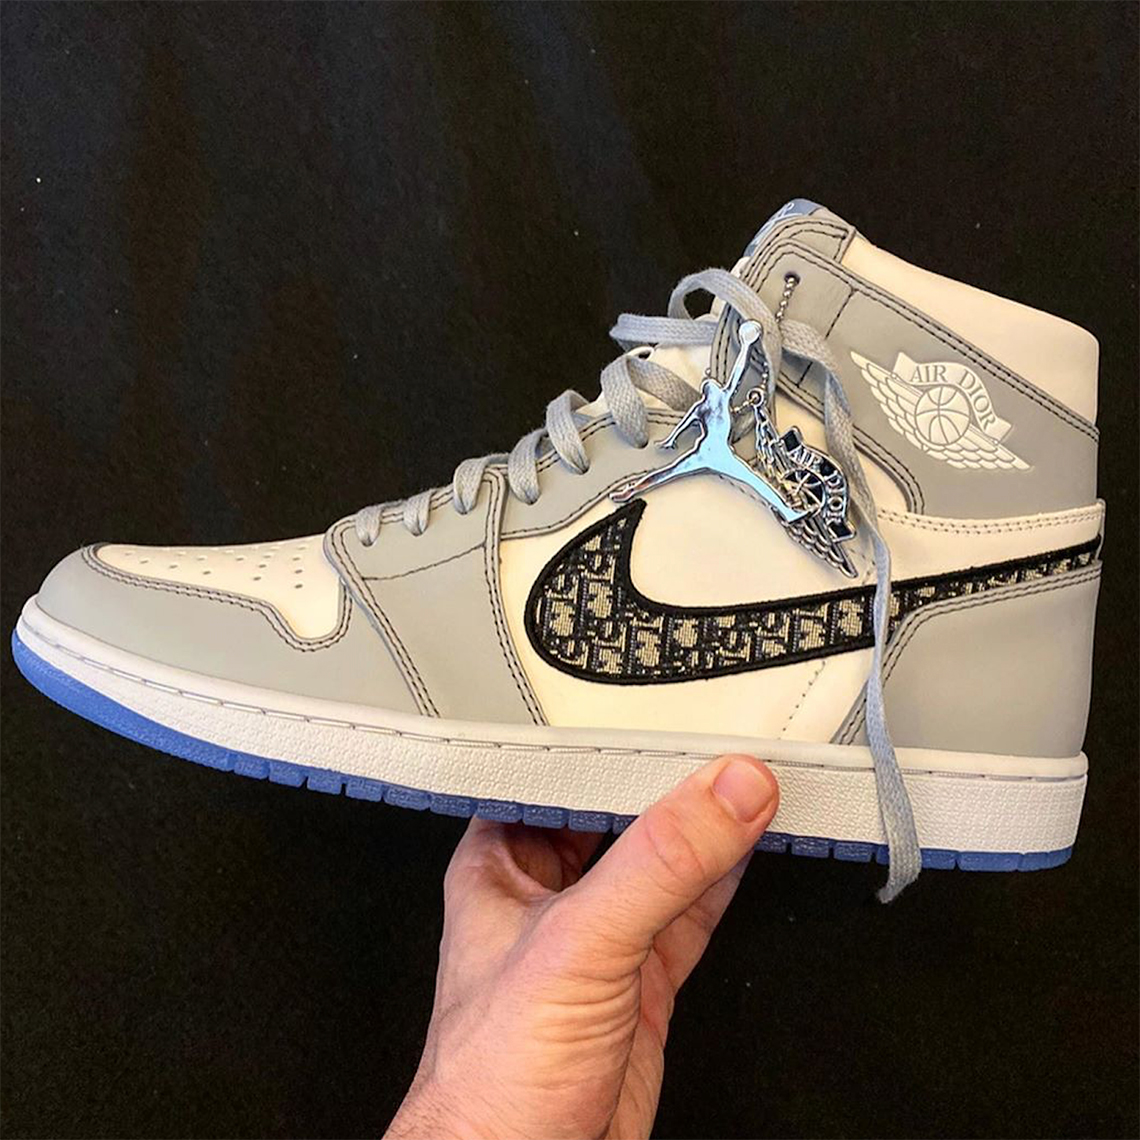 DIOR Air Jordan 1 First Look | SneakerNews.com مكينة المعصوب